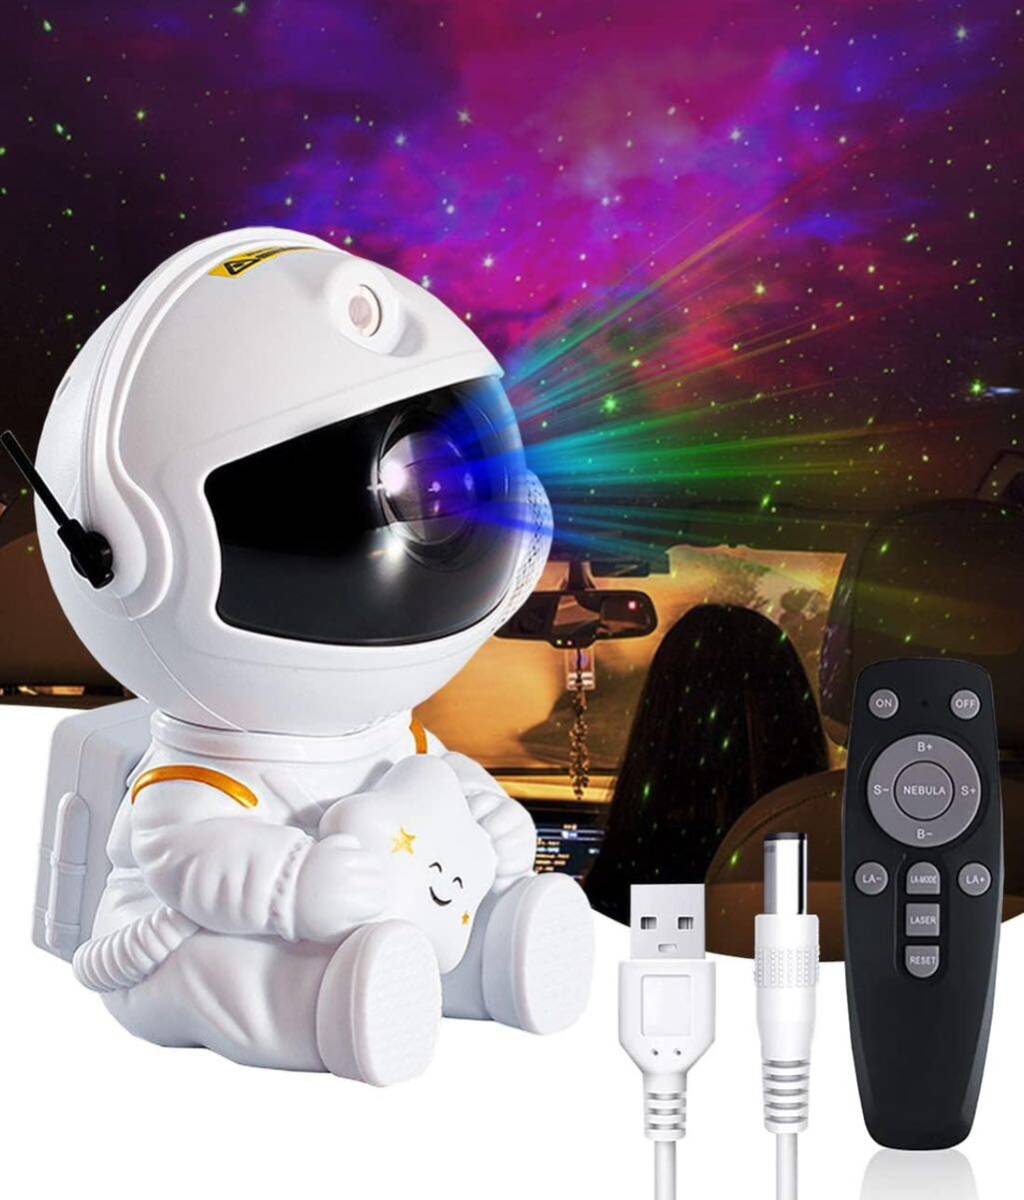 スタープロジェクター 宇宙飛行士の星空投影灯 満天の星の雰囲気 プラネタリウム LEDプロジェクターライト 静音 360°回転磁気ヘッド_画像1